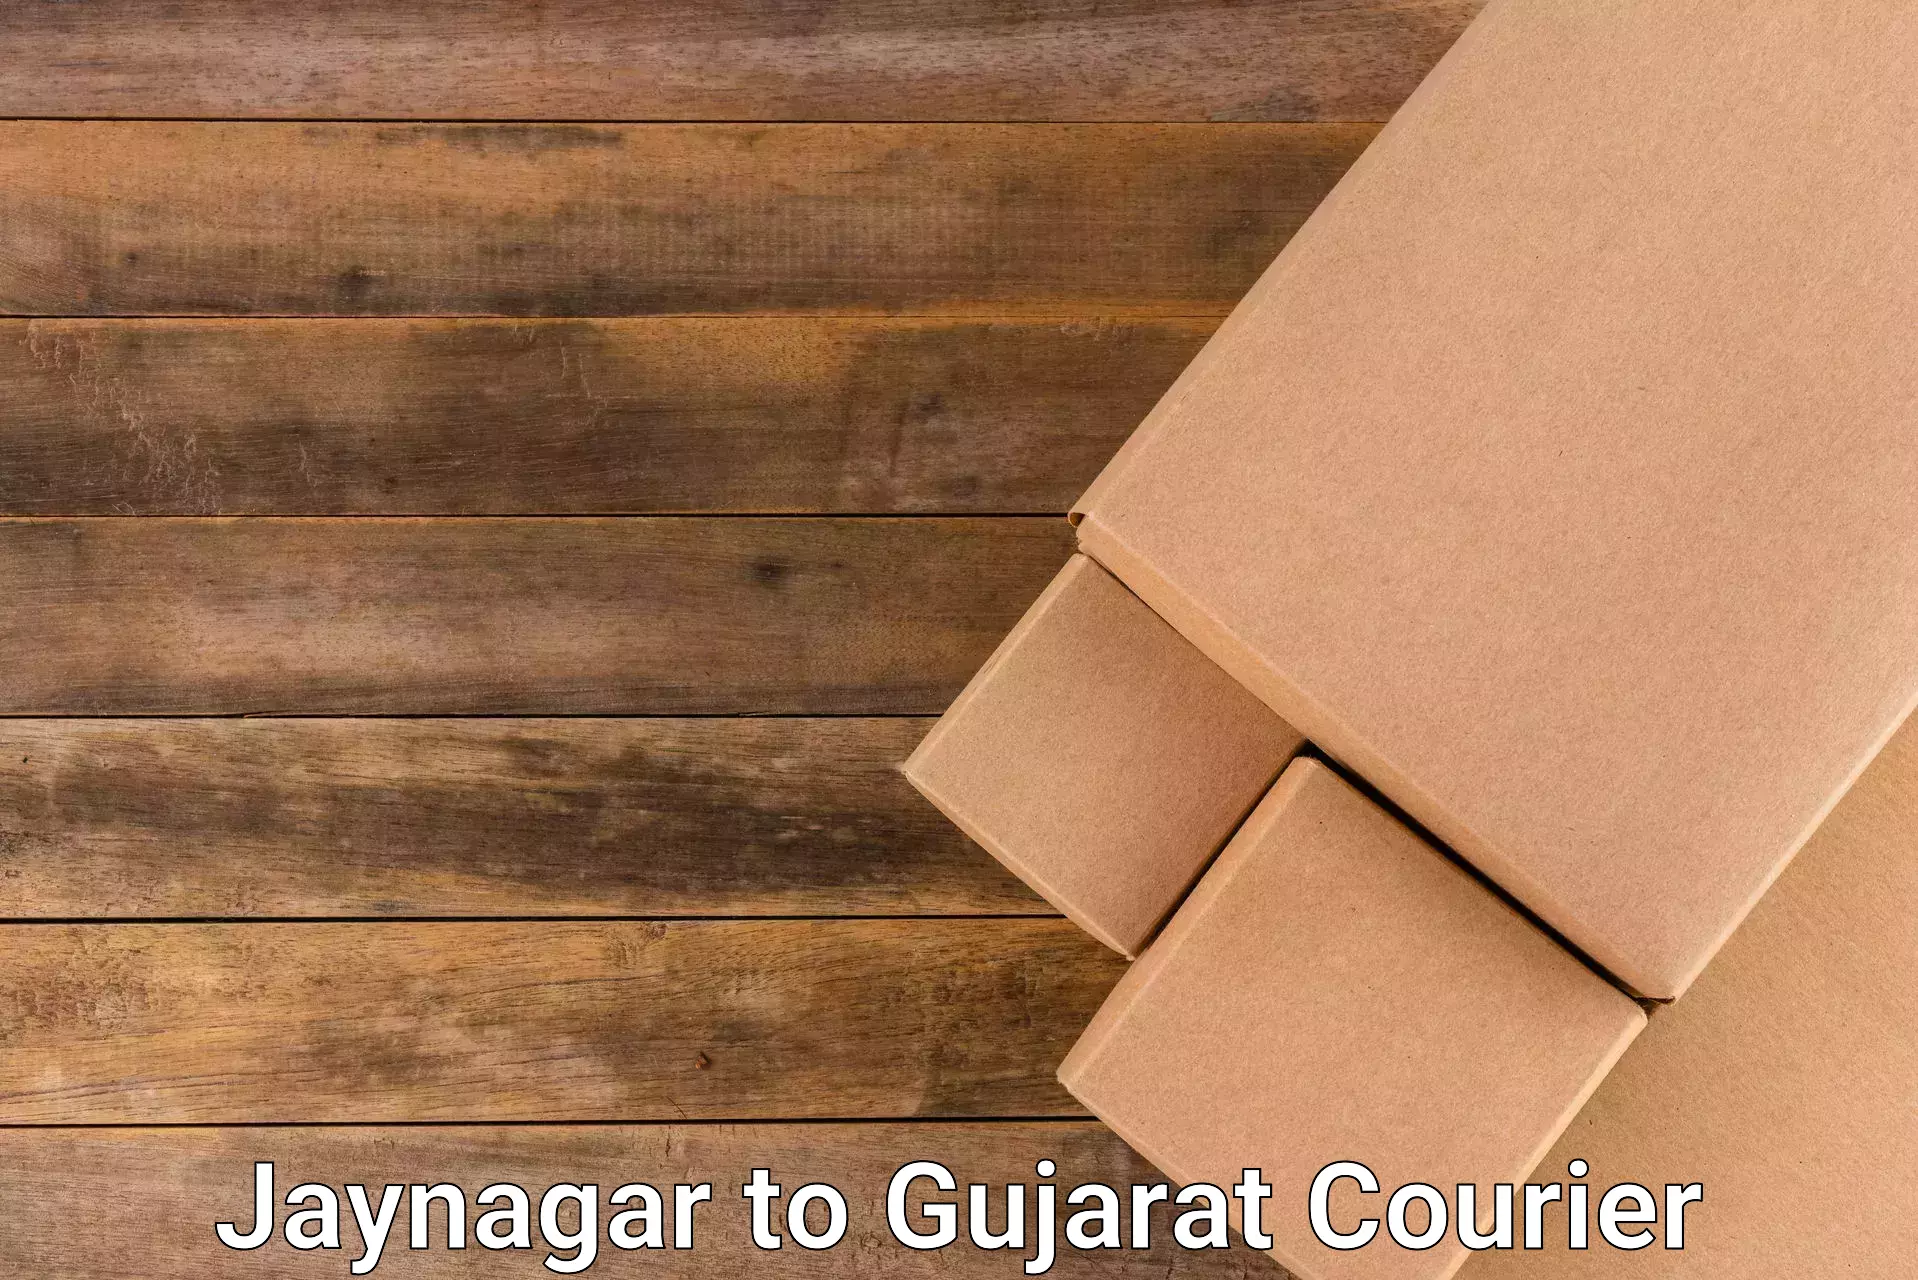 Urgent courier needs Jaynagar to Gujarat